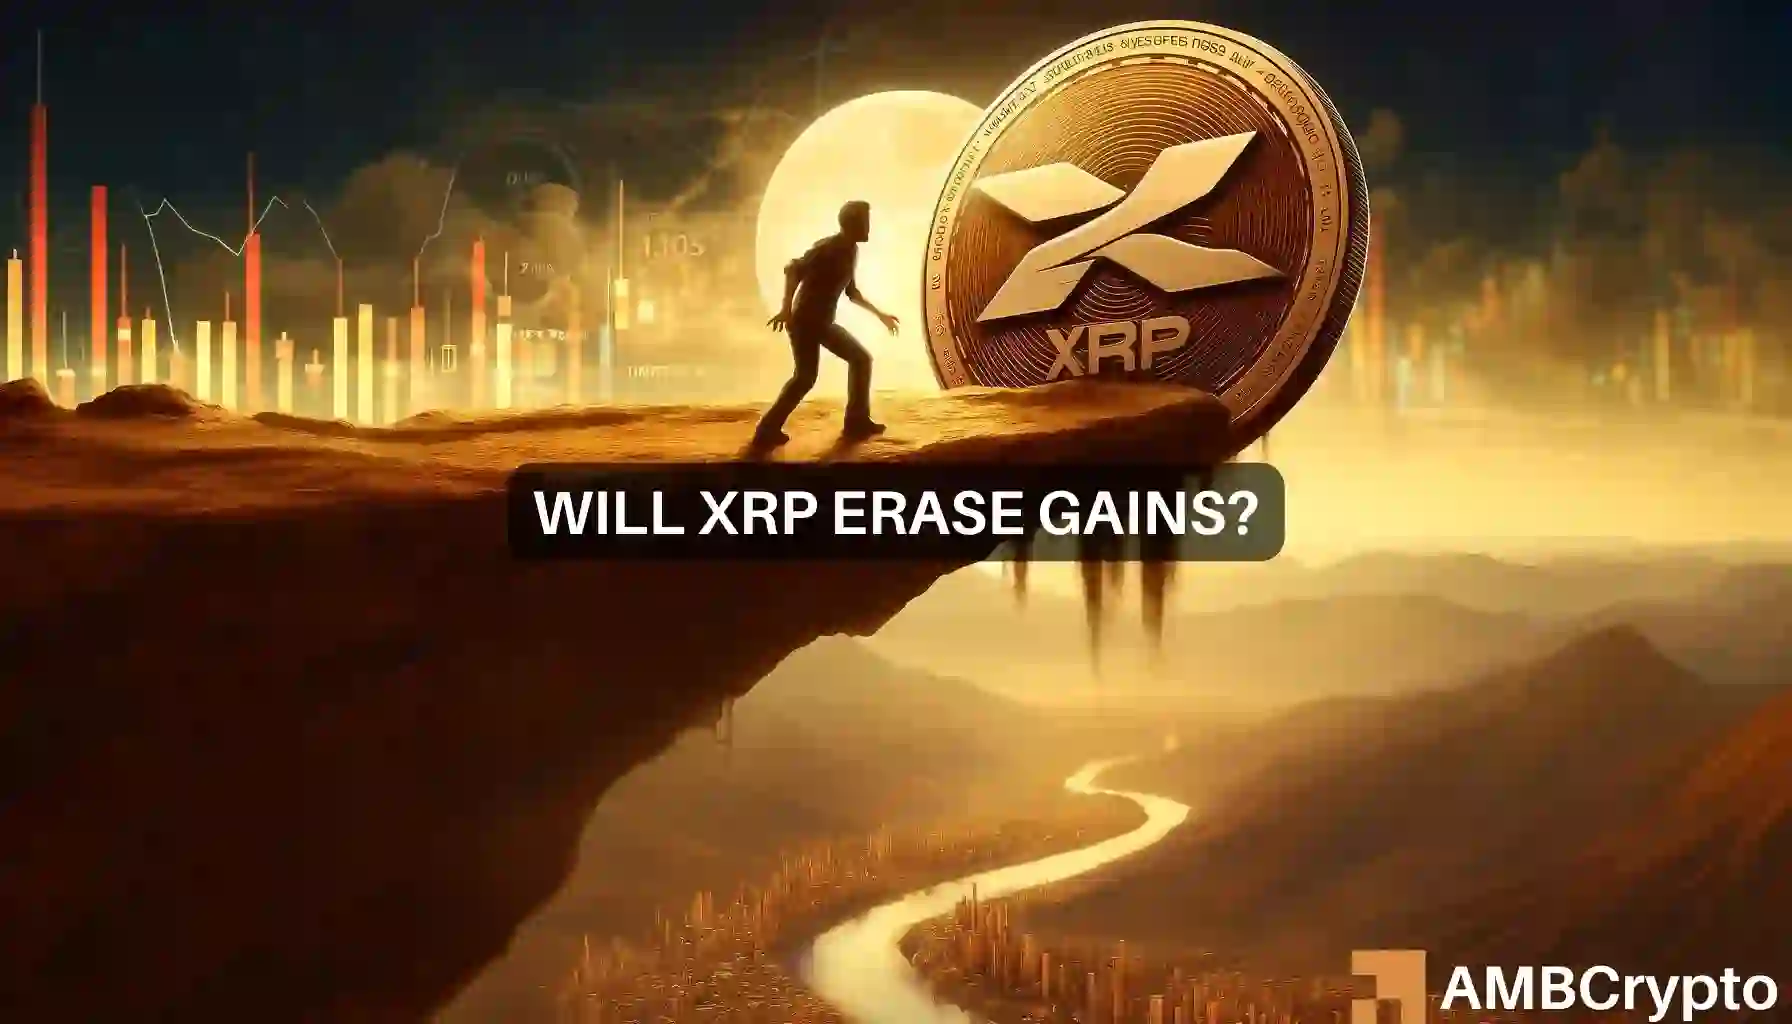 XRP holders dump tokens: Will price drop below $0.50 now?